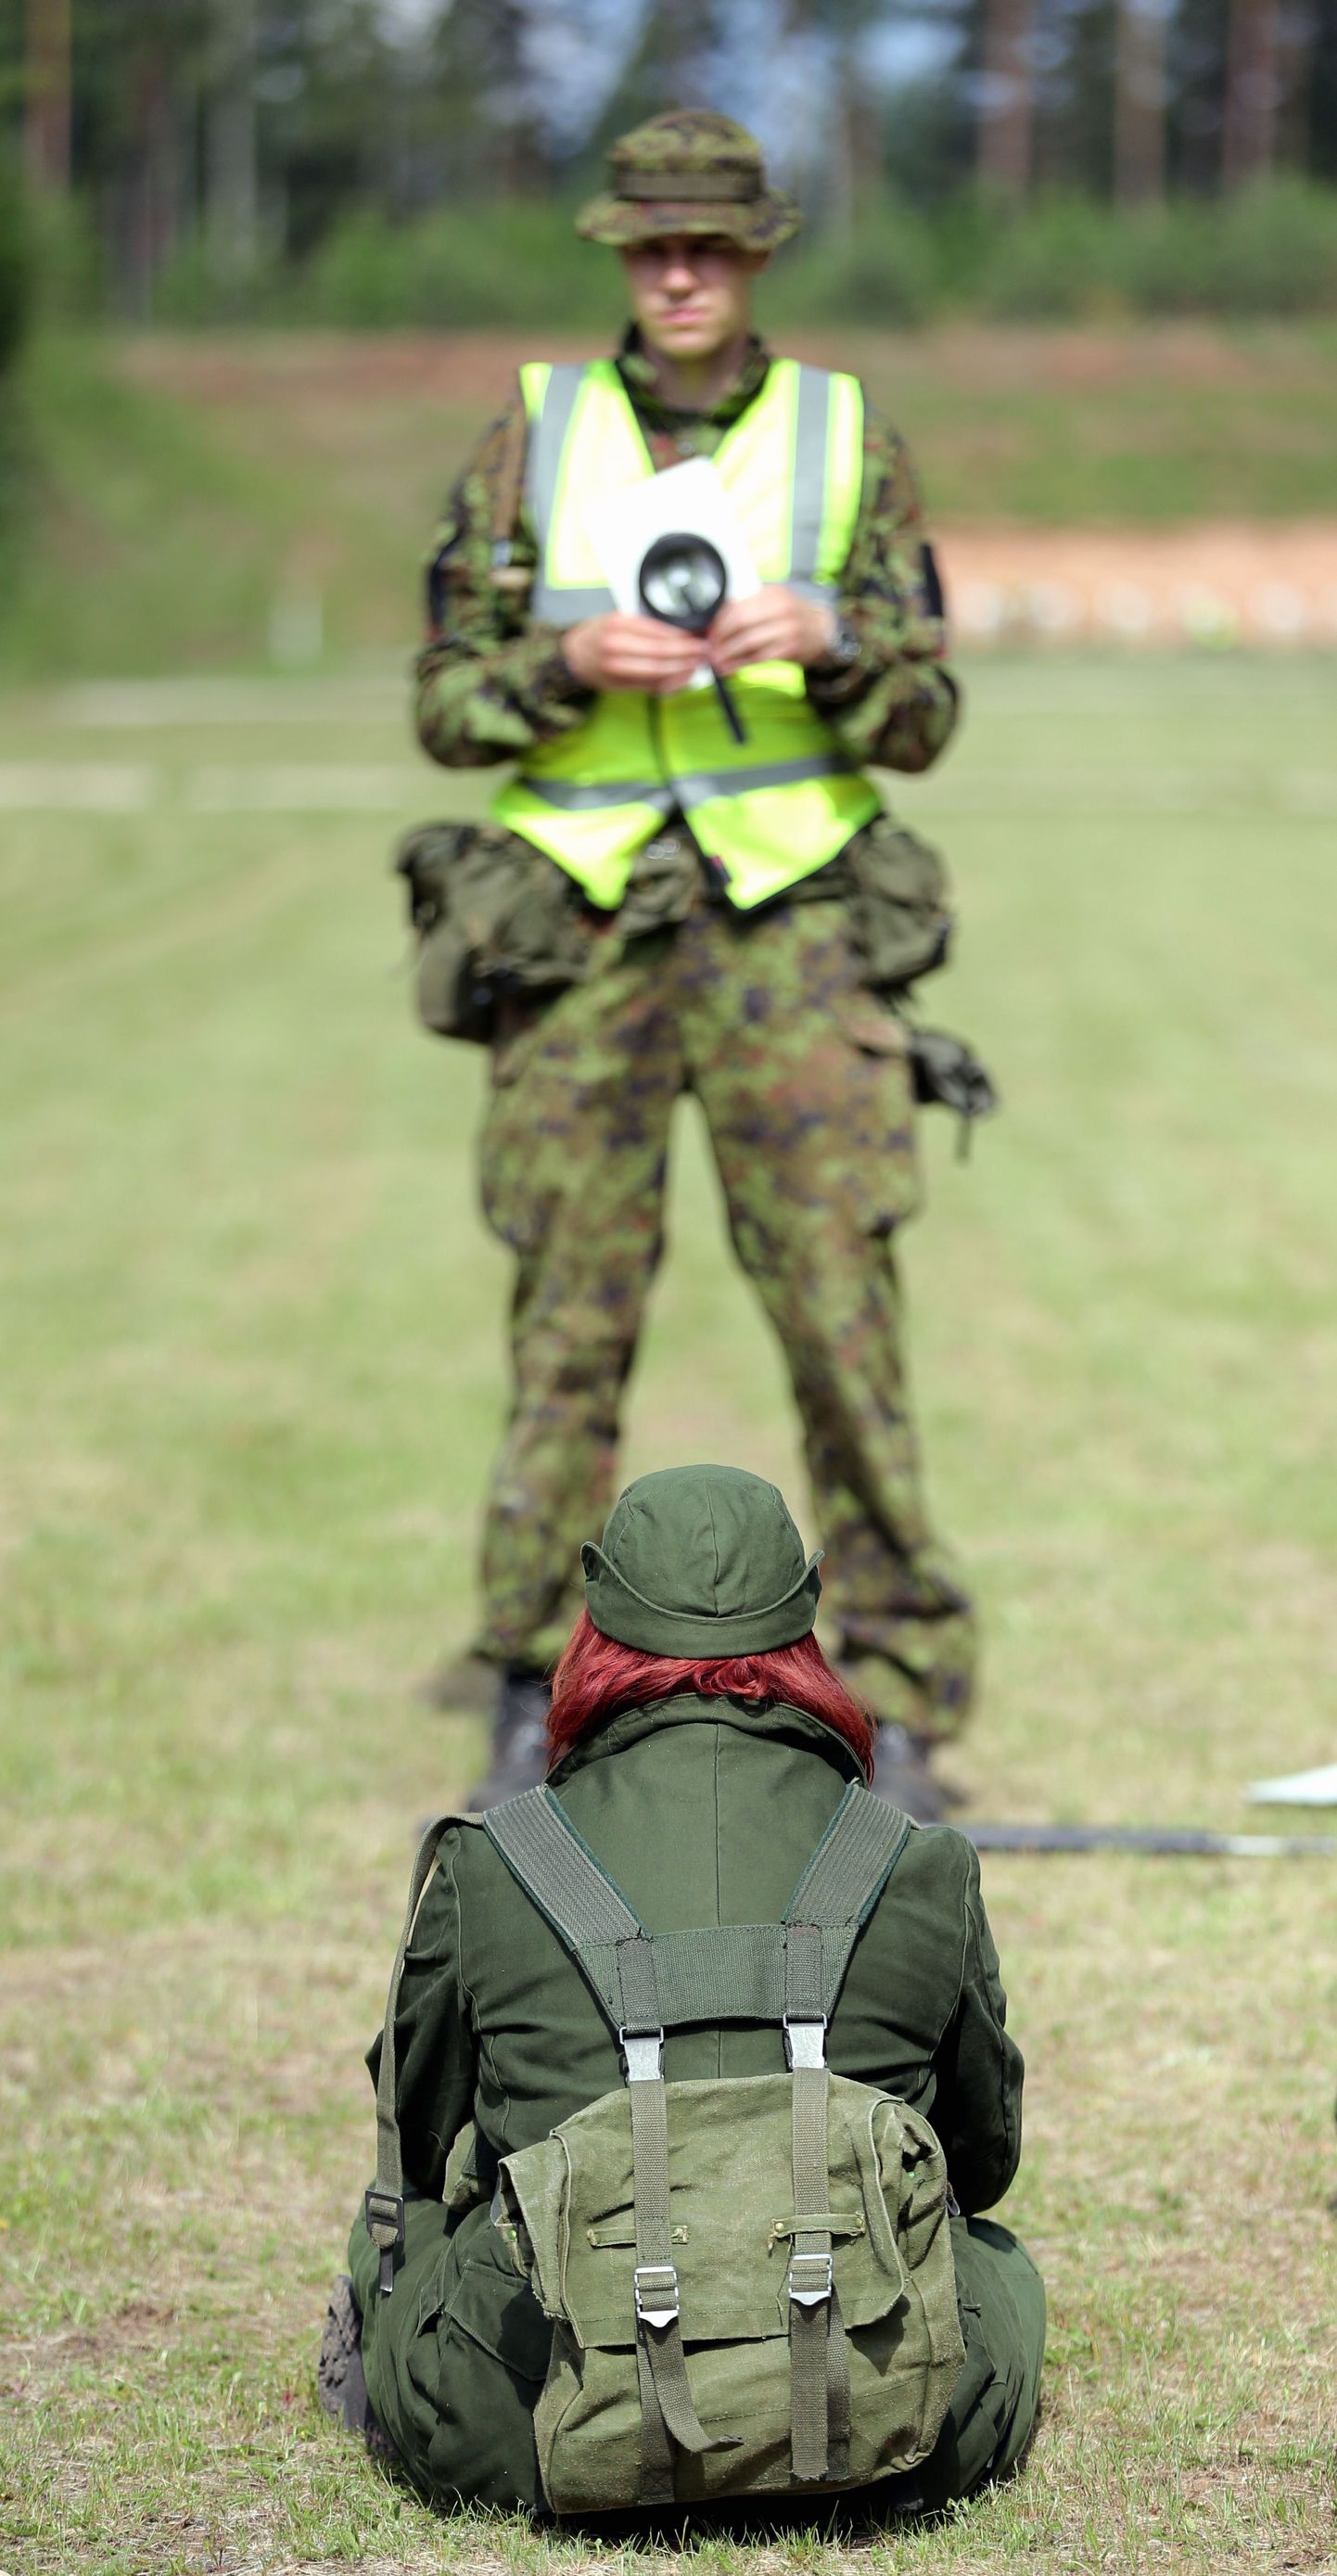 Riigikaitseõpetuse laager Unikülas.
Sihtimistreening.
Pildil õpetab kadett Jüri Bakhoff õpilasi õigesti sihtima.